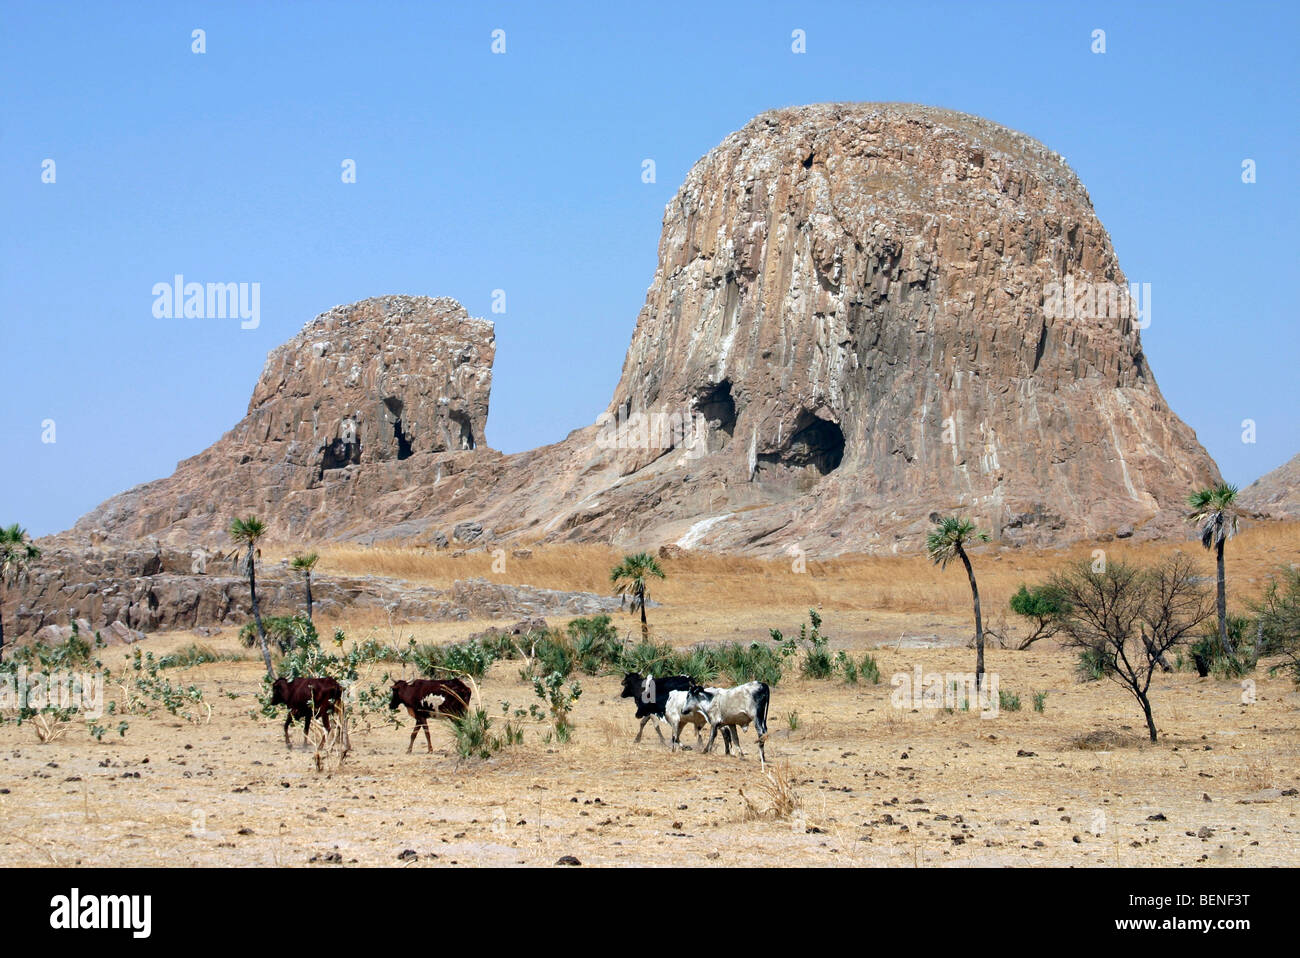 L'érosion des roches volcaniques basaltiques de Hadjer El Hamis / rocher des éléphants / Elephant Rock, près de Douguia, Tchad, Afrique Centrale Banque D'Images